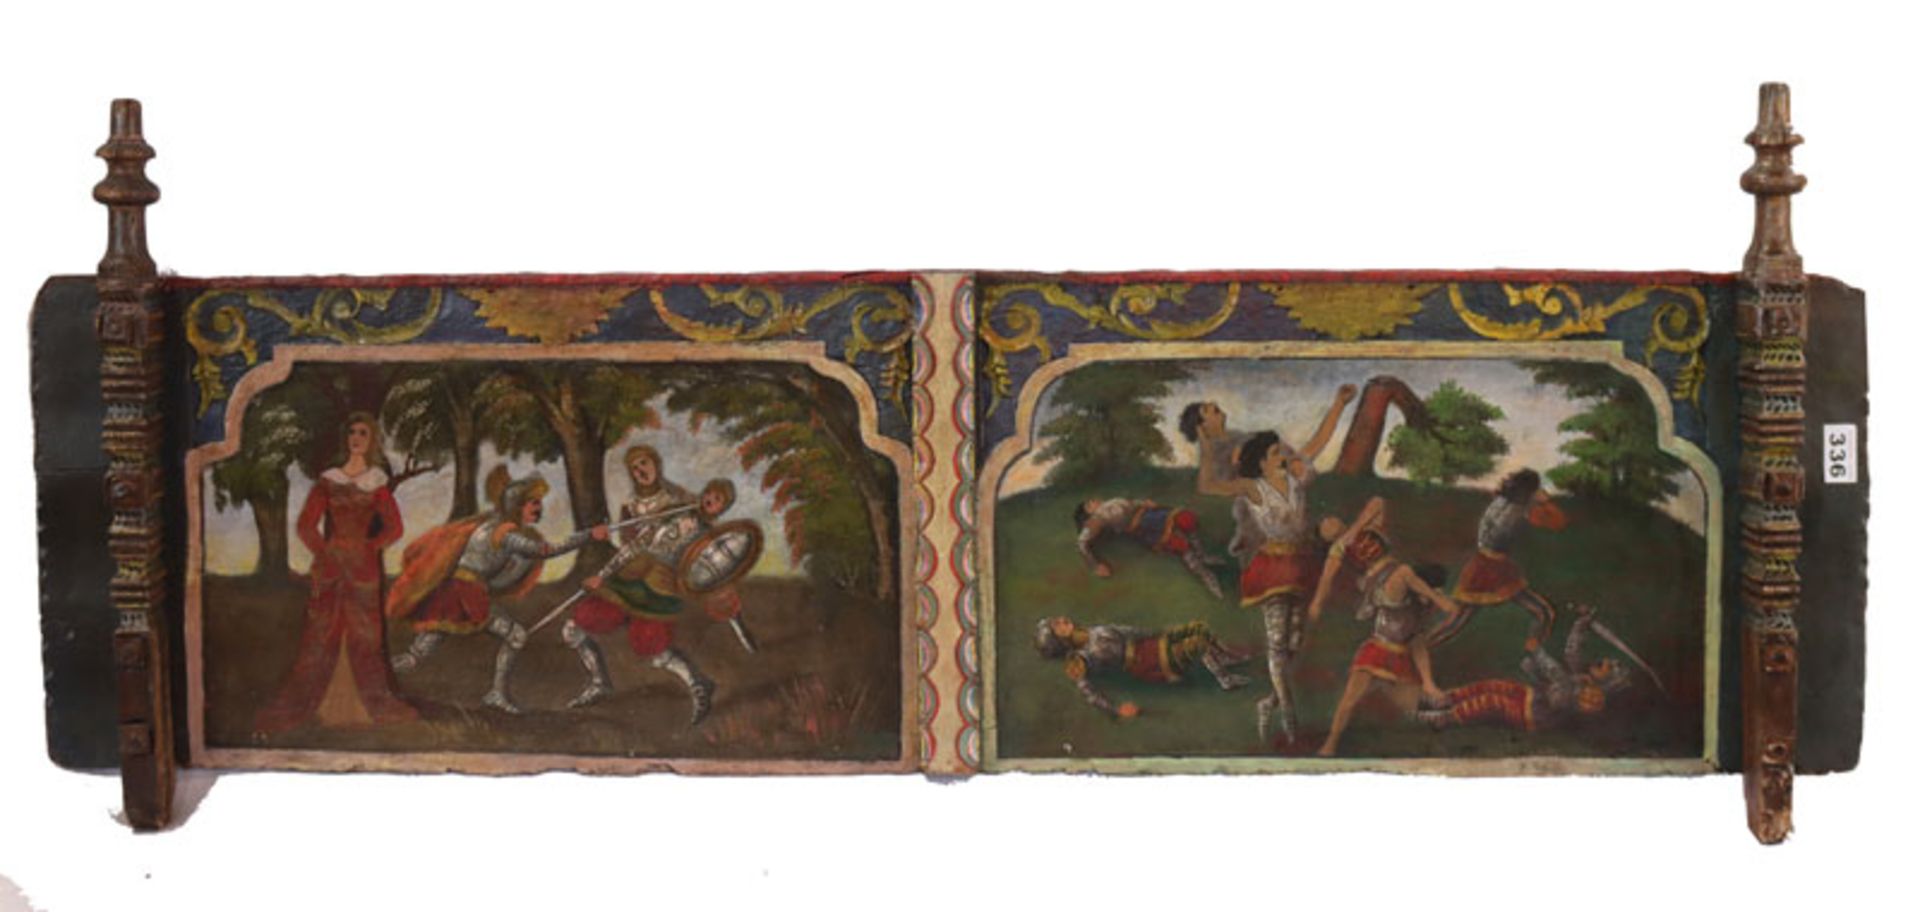 Holzbrett eines südländischen Eselswagen, bemalt mit Ritter-Szenerien, 50 cm x 123 cm, Altersspuren